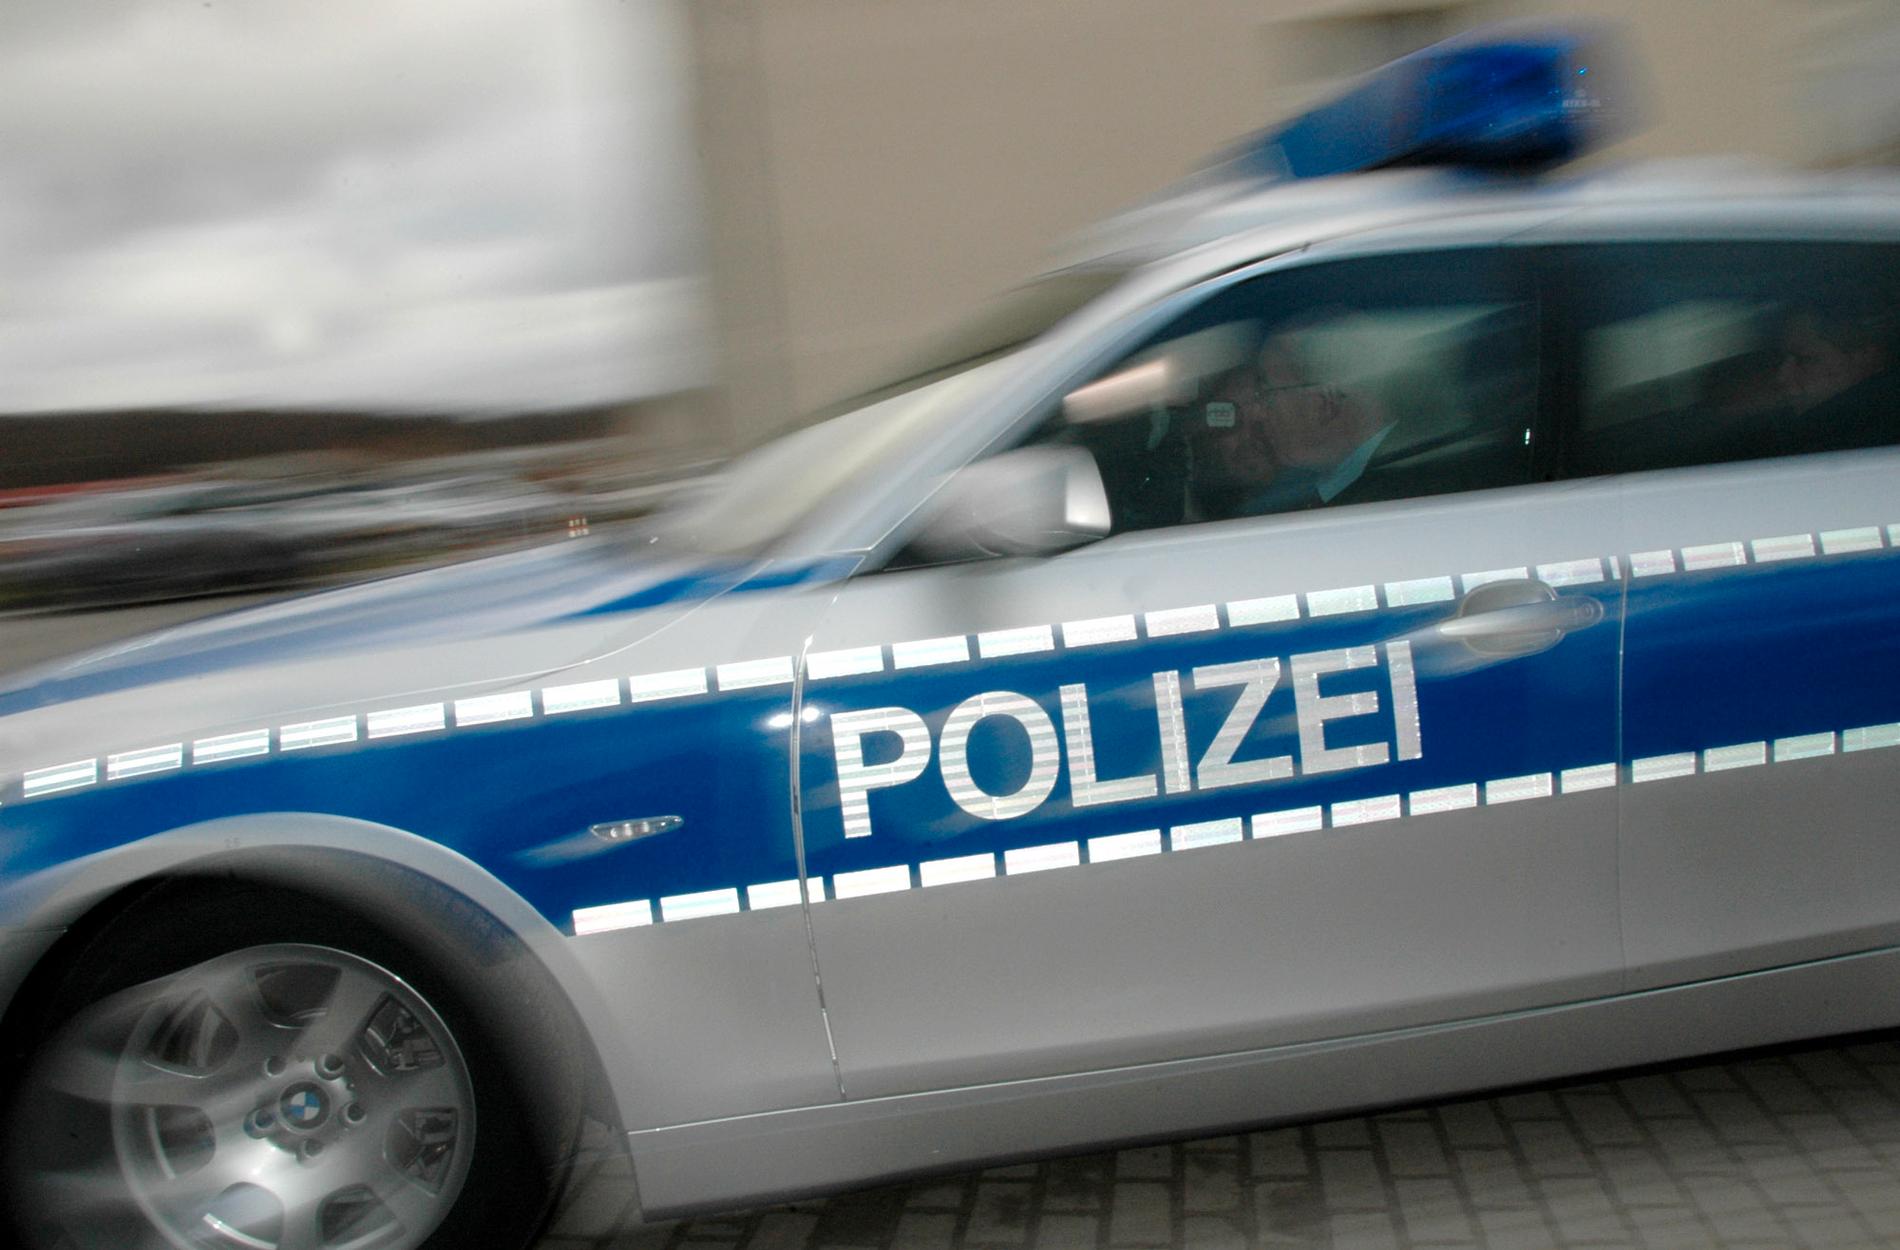 En passagerare har tagit två busschaufförer som gisslan på en buss i södra Tyskland. Arkivbild.